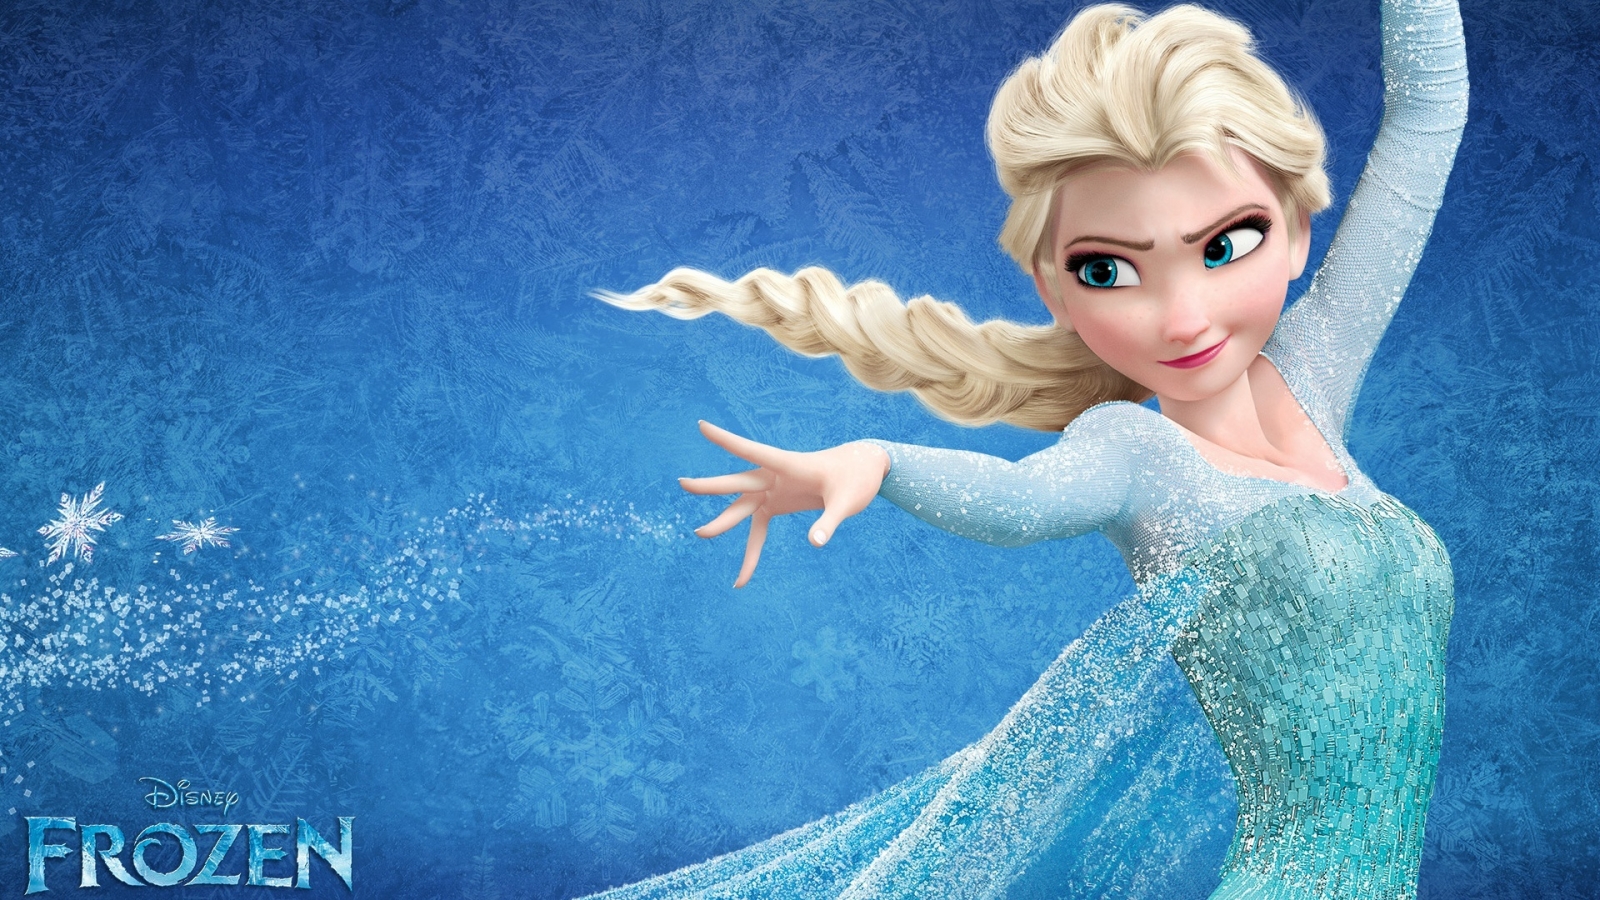 Frozen Elsa for 1600 x 900 HDTV resolution